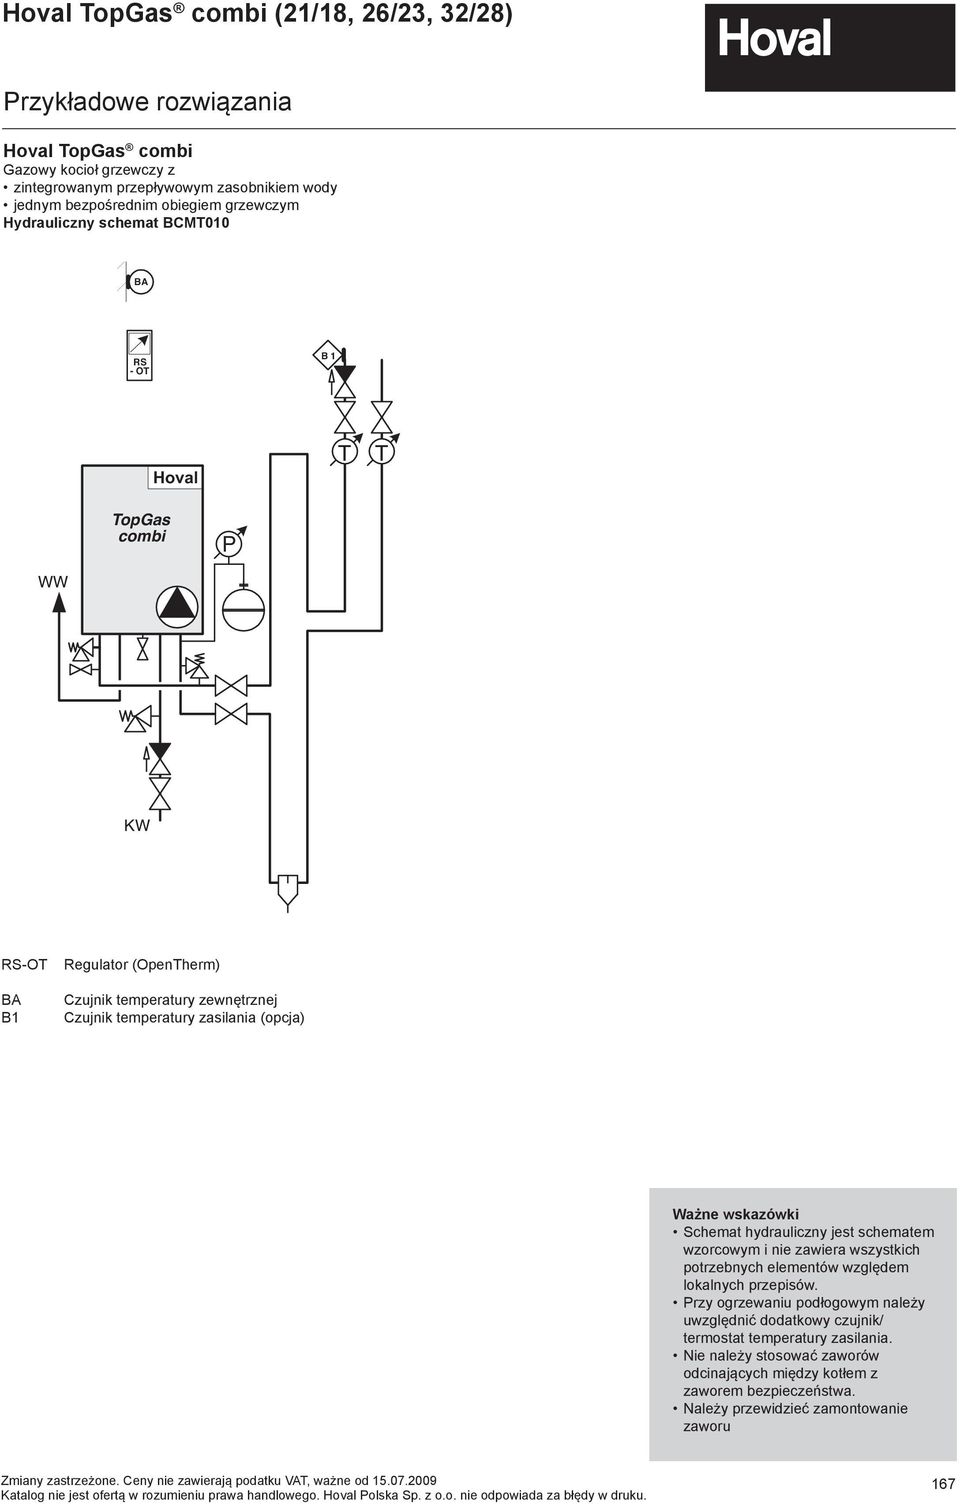 !! hovhovalhovalhoval hovalhovalhovalhov P Gas KW RS-OT BA B1 Regulator (OpenTherm) Czujnik temperatury zewnętrznej Czujnik temperatury zasilania (opcja) Ważne wskazówki Schemat hydrauliczny jest